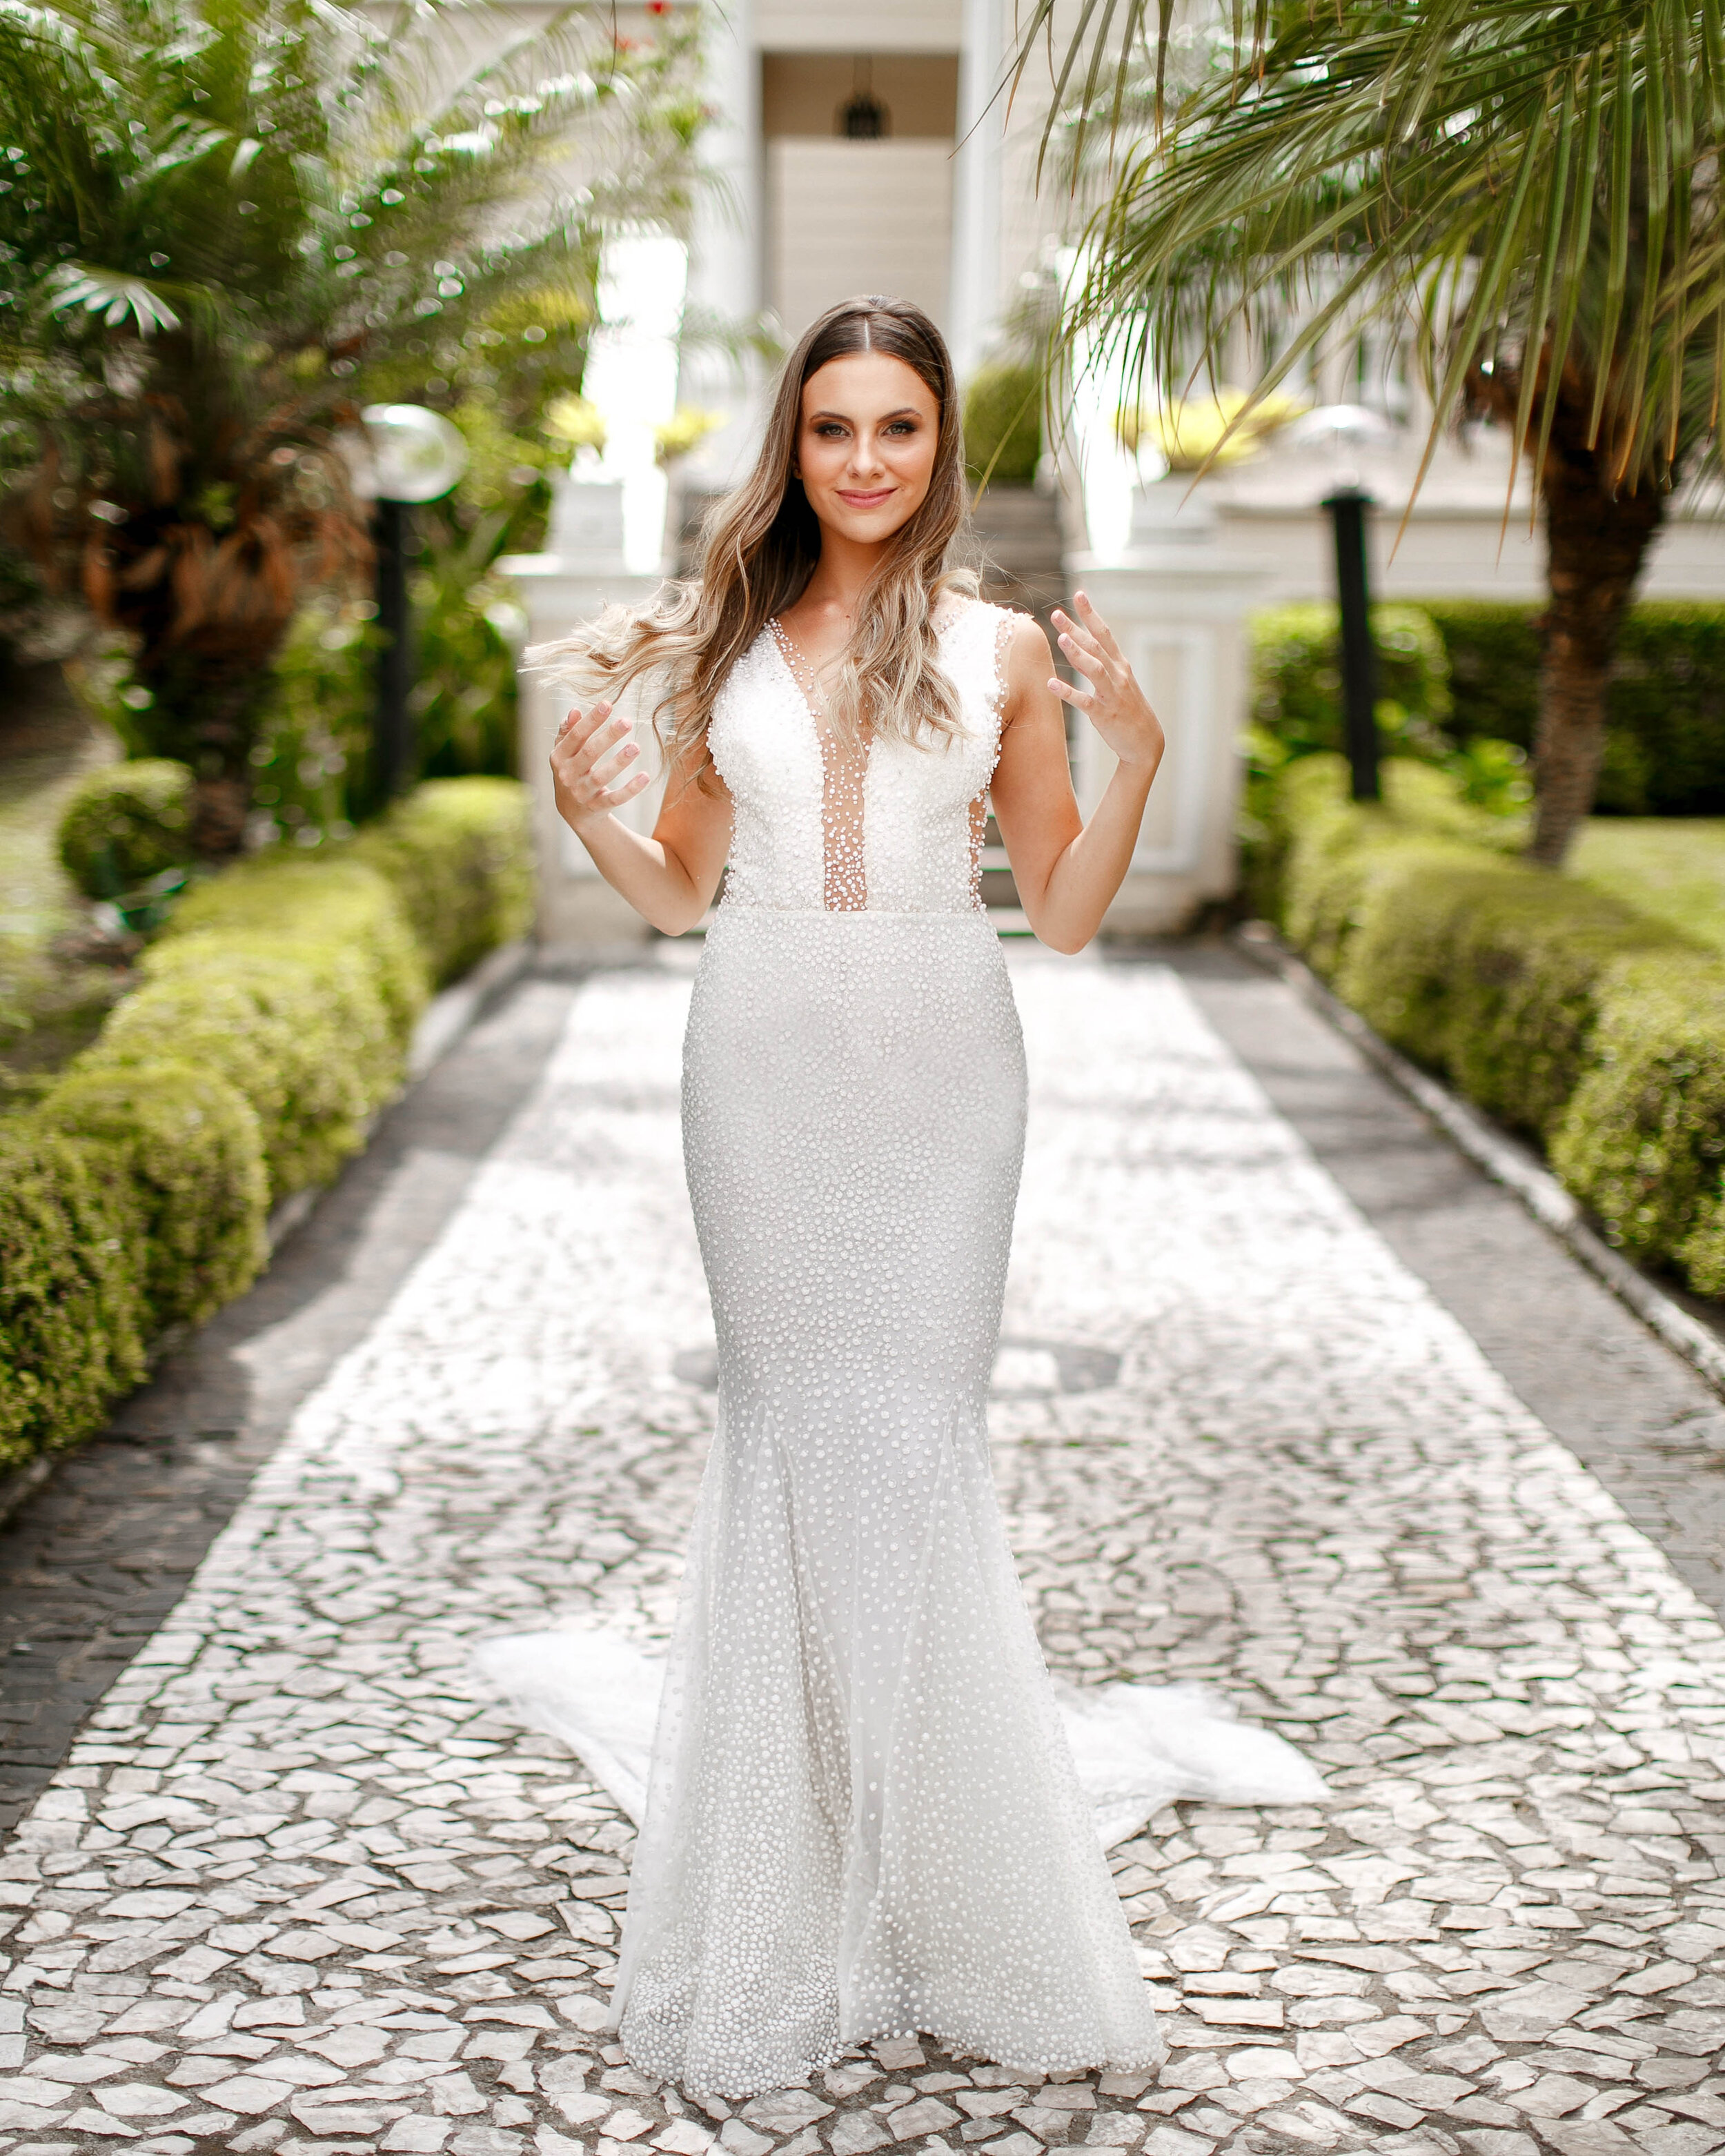 Cheng NV fotografo de casamento em Curitiba- Melhor fotografia do brasil - MIni casamento - Inspiração de decoração - 2020 - noiva - inesquecivel casamento_.1.jpg